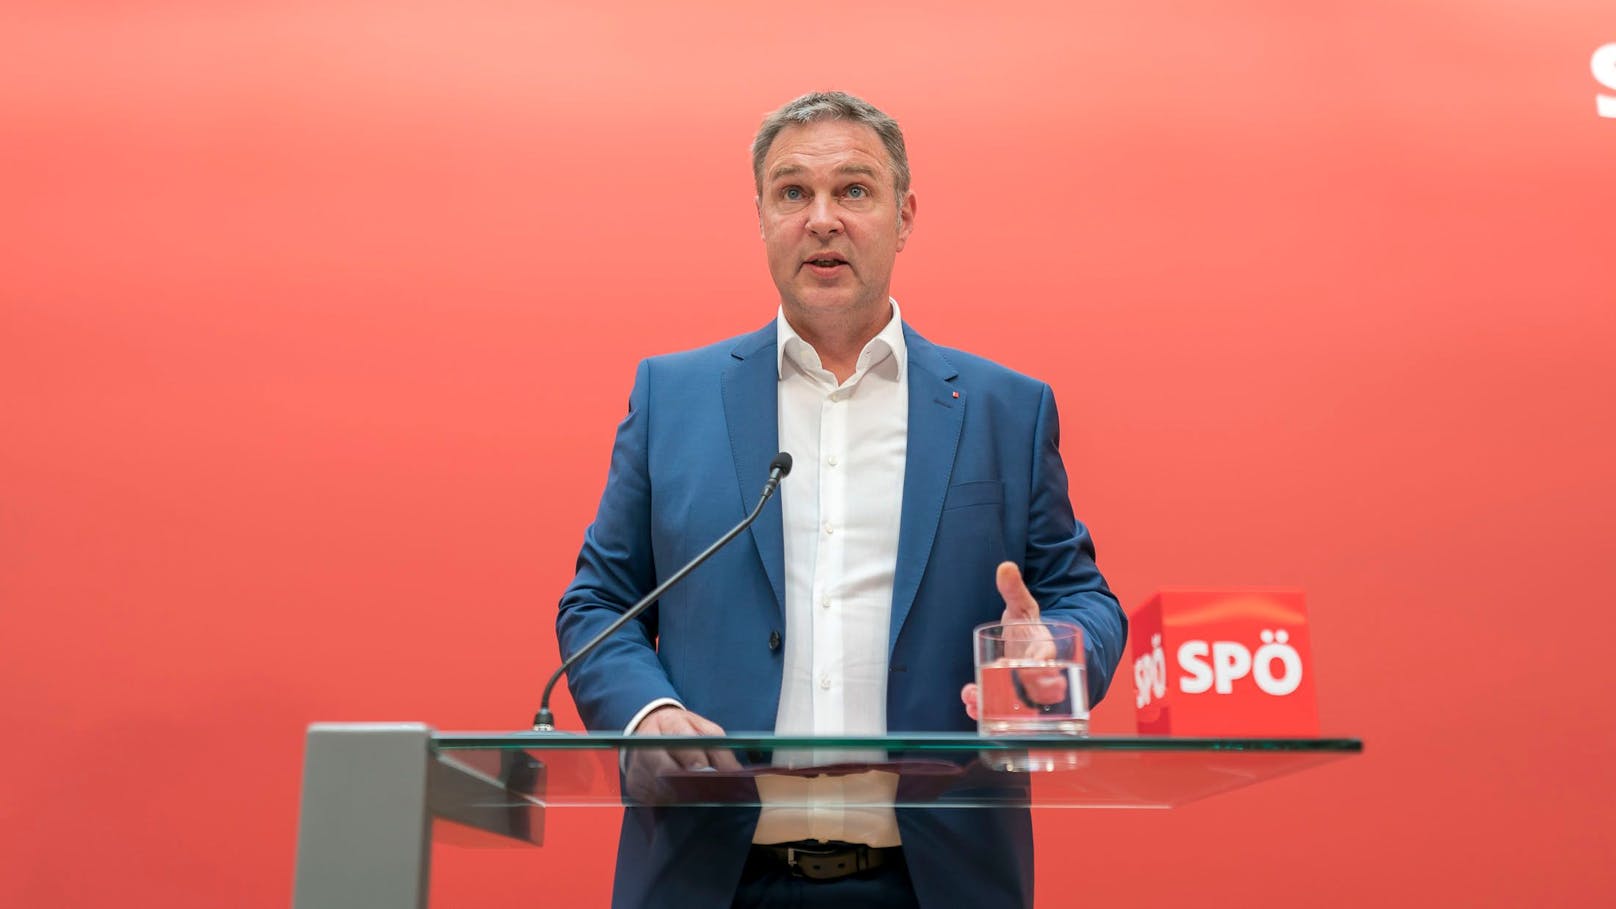  In einem Facebook-Posting übte der Innsbrucker SPÖ-Klubchef Helmut Buchacher scharfe Kritik am neuen Bundesparteivorsitzenden Andreas Babler.